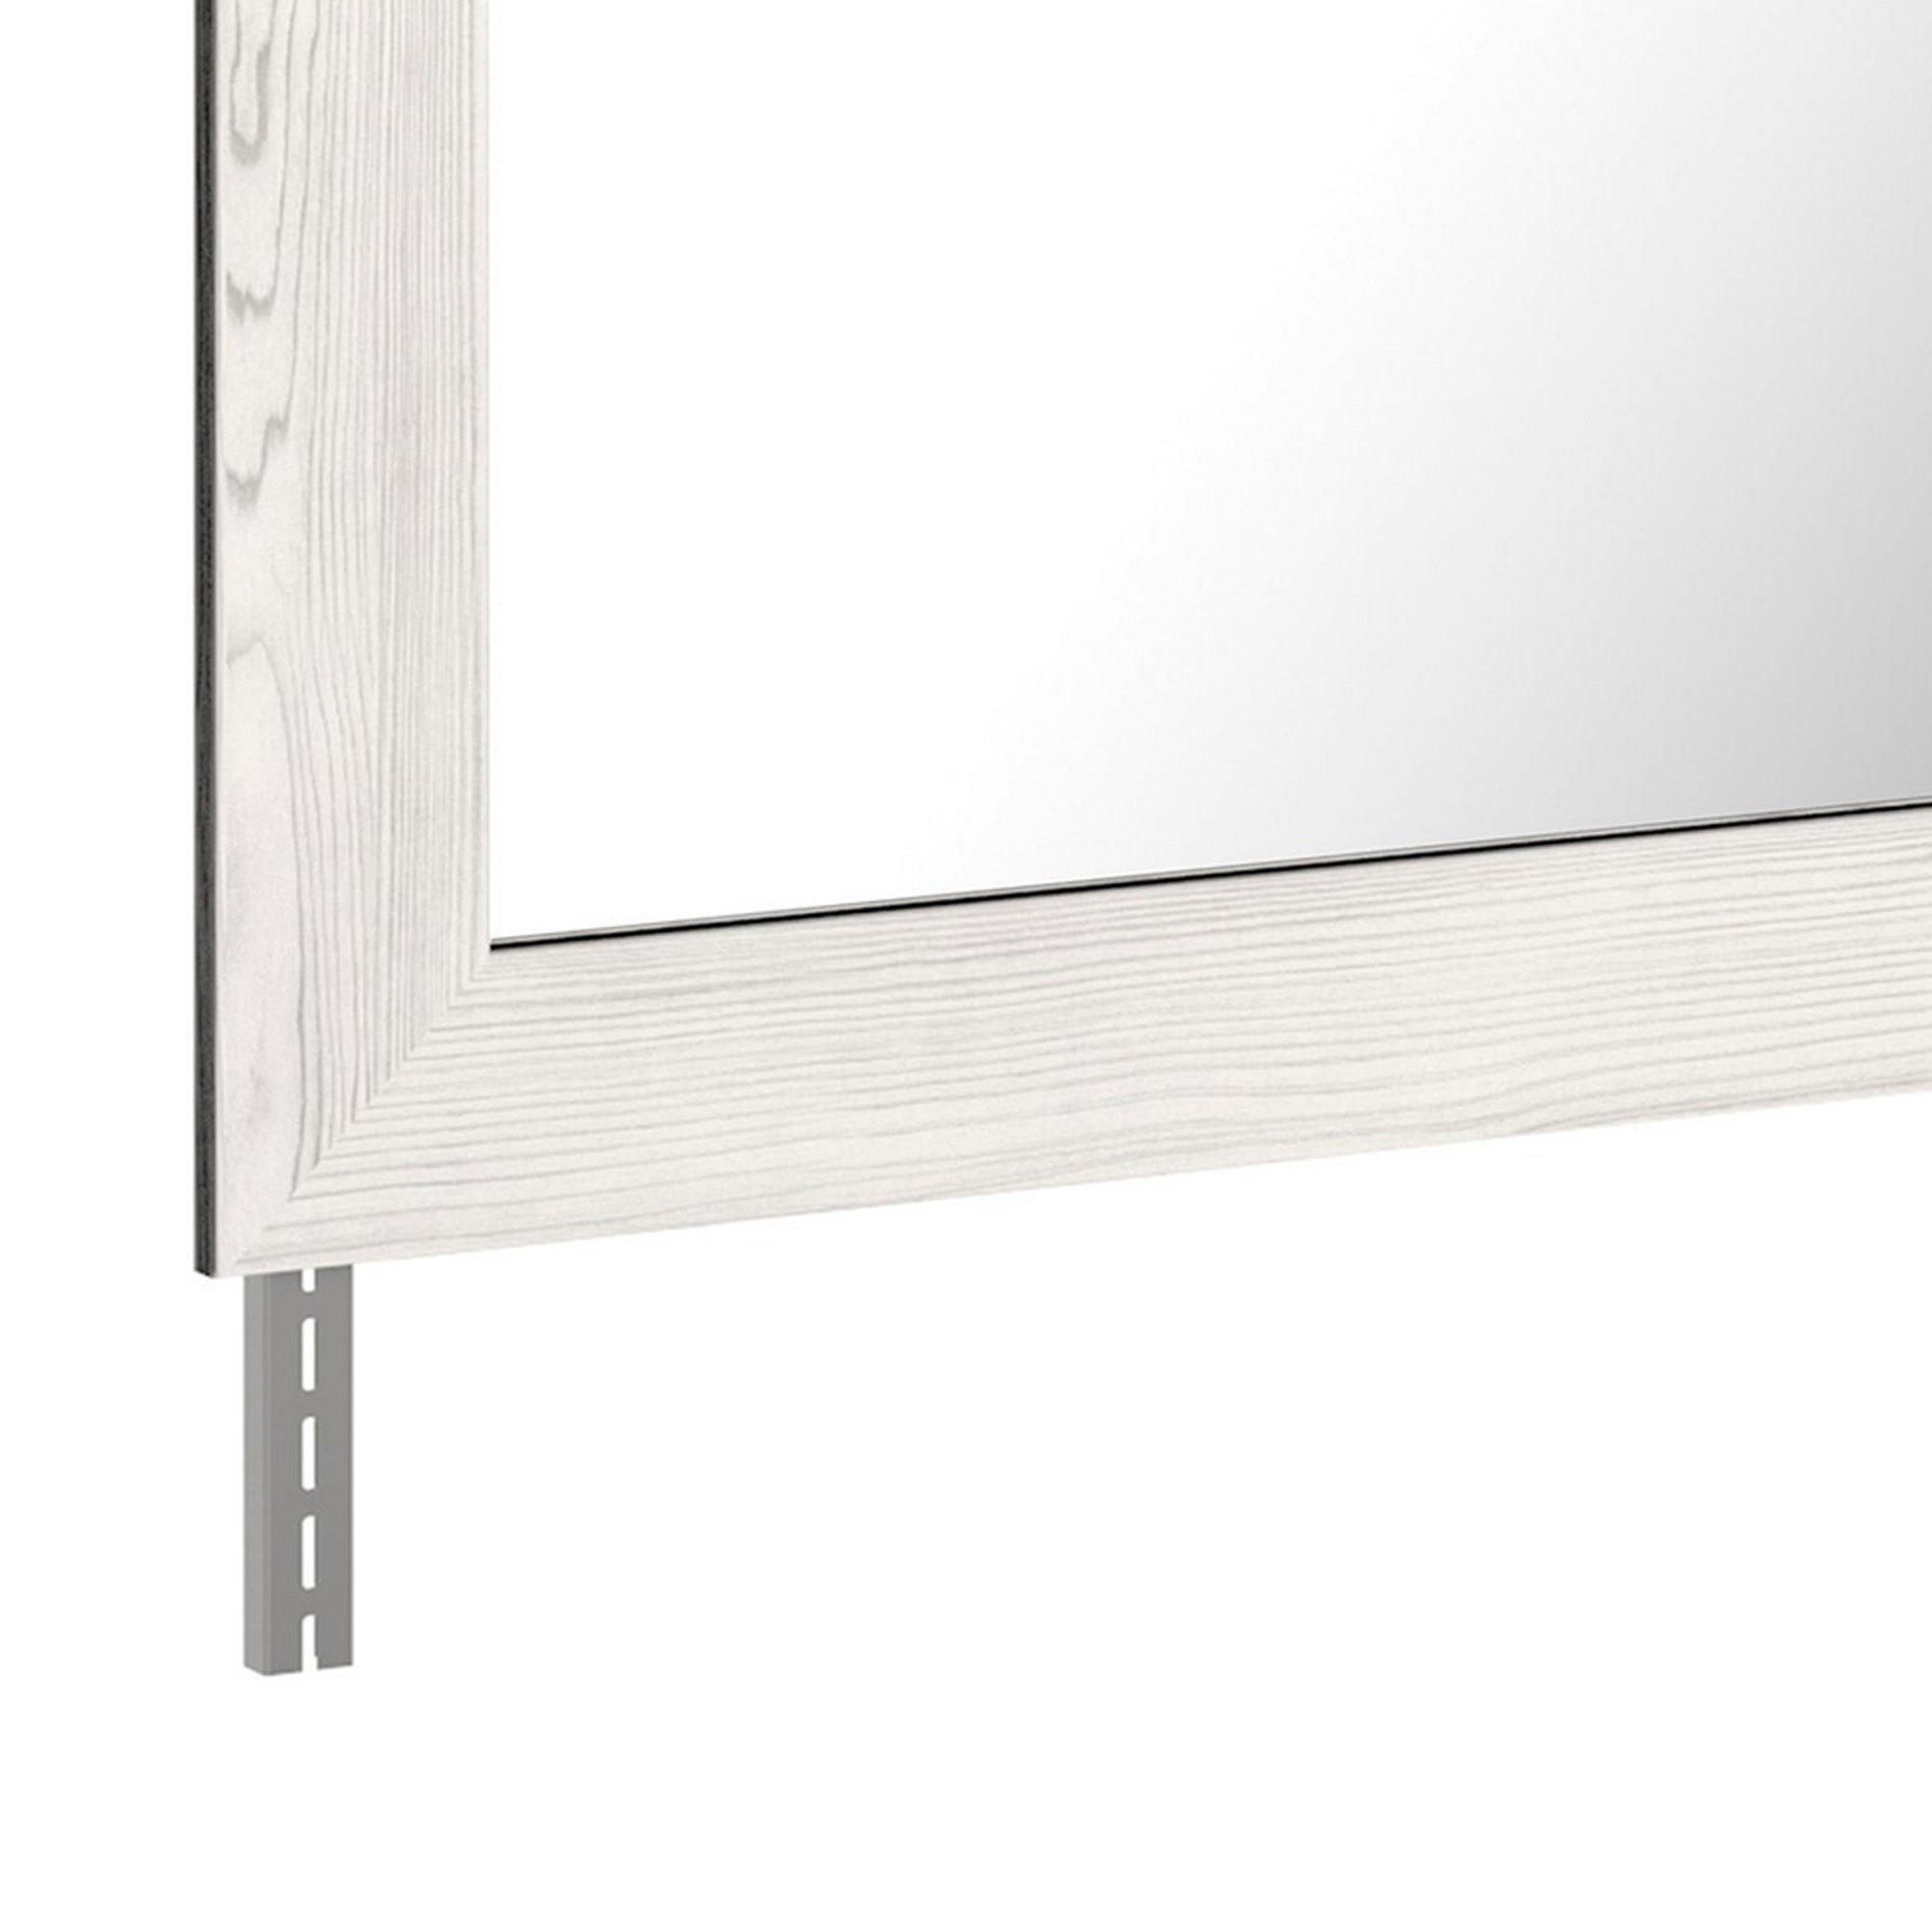 Benzara Rectangular Wooden Bedroom Mirror With Grain Details, Gray By Benzara Mirrors BM232923